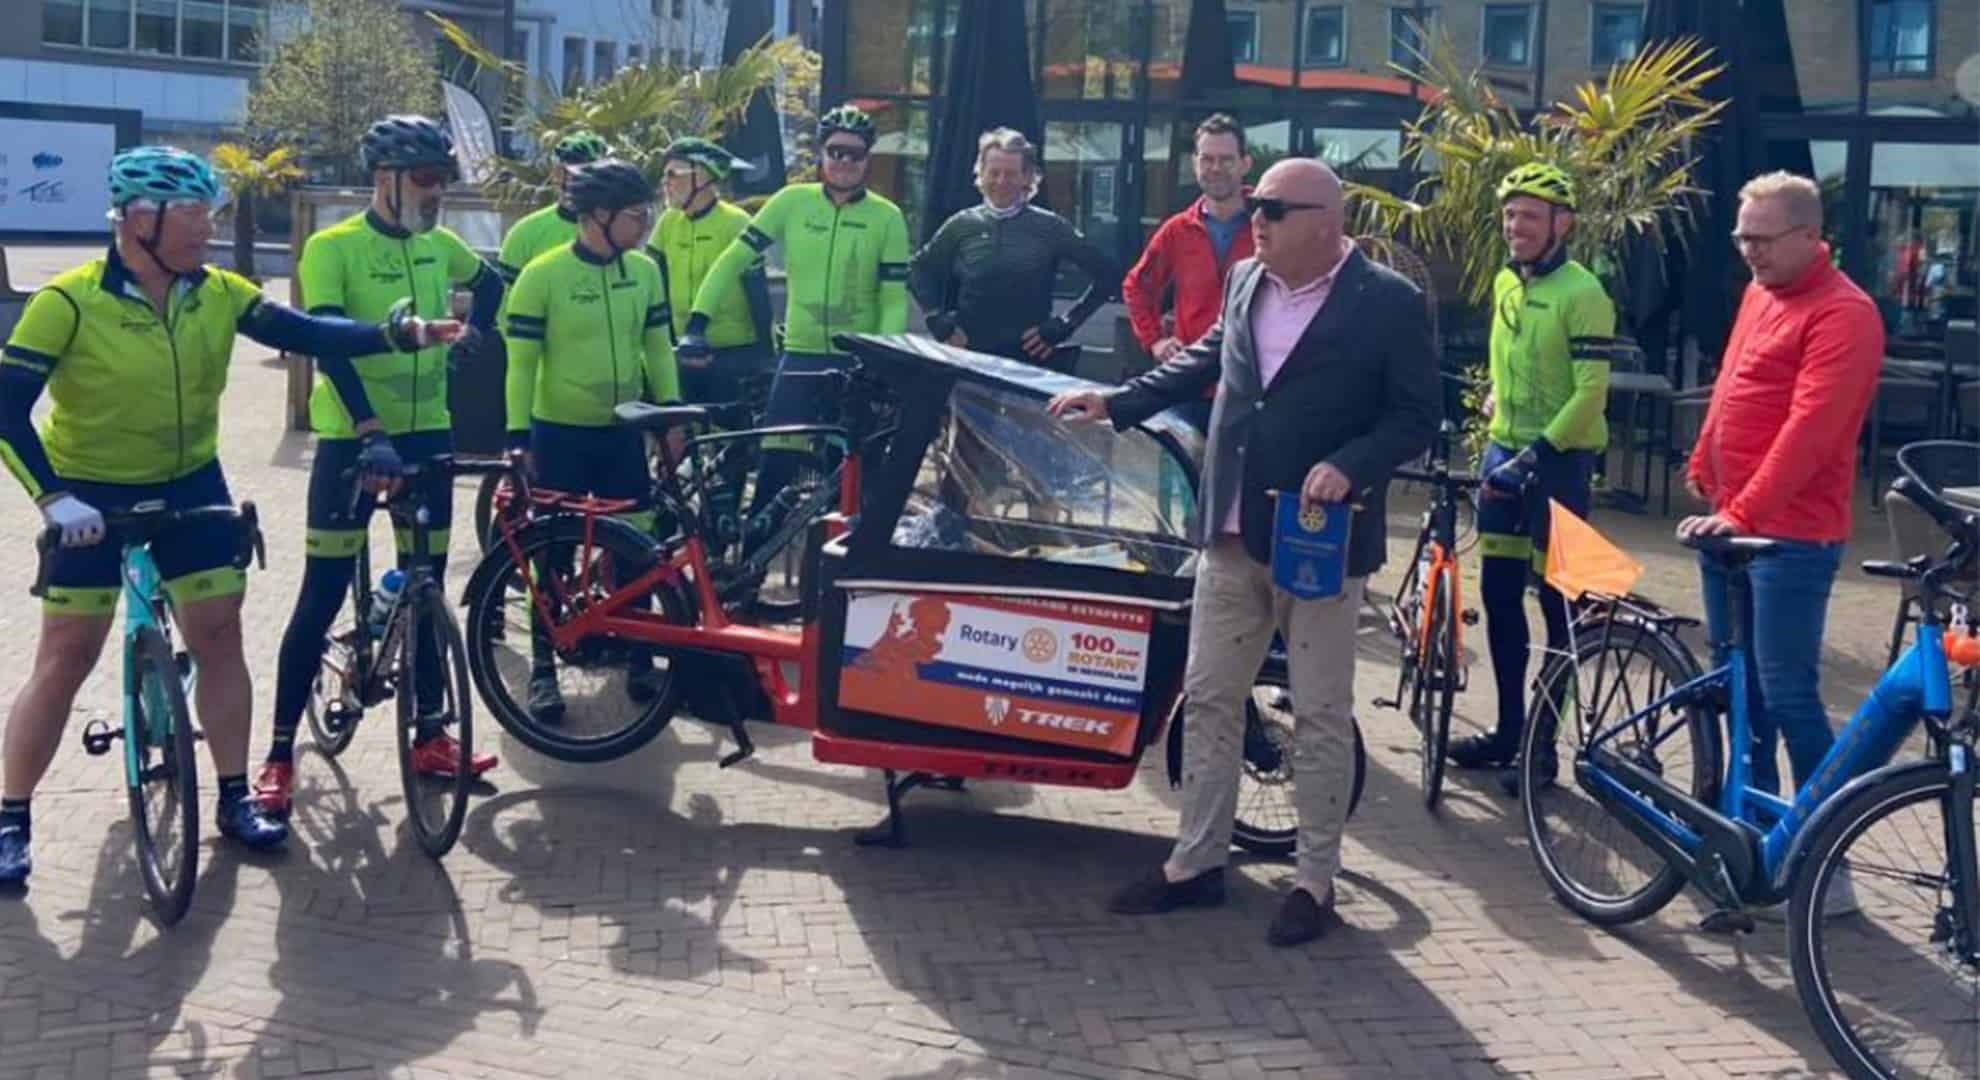 overhandiging elektrische bakfiets Rotary 100 jaar in Emmeloord